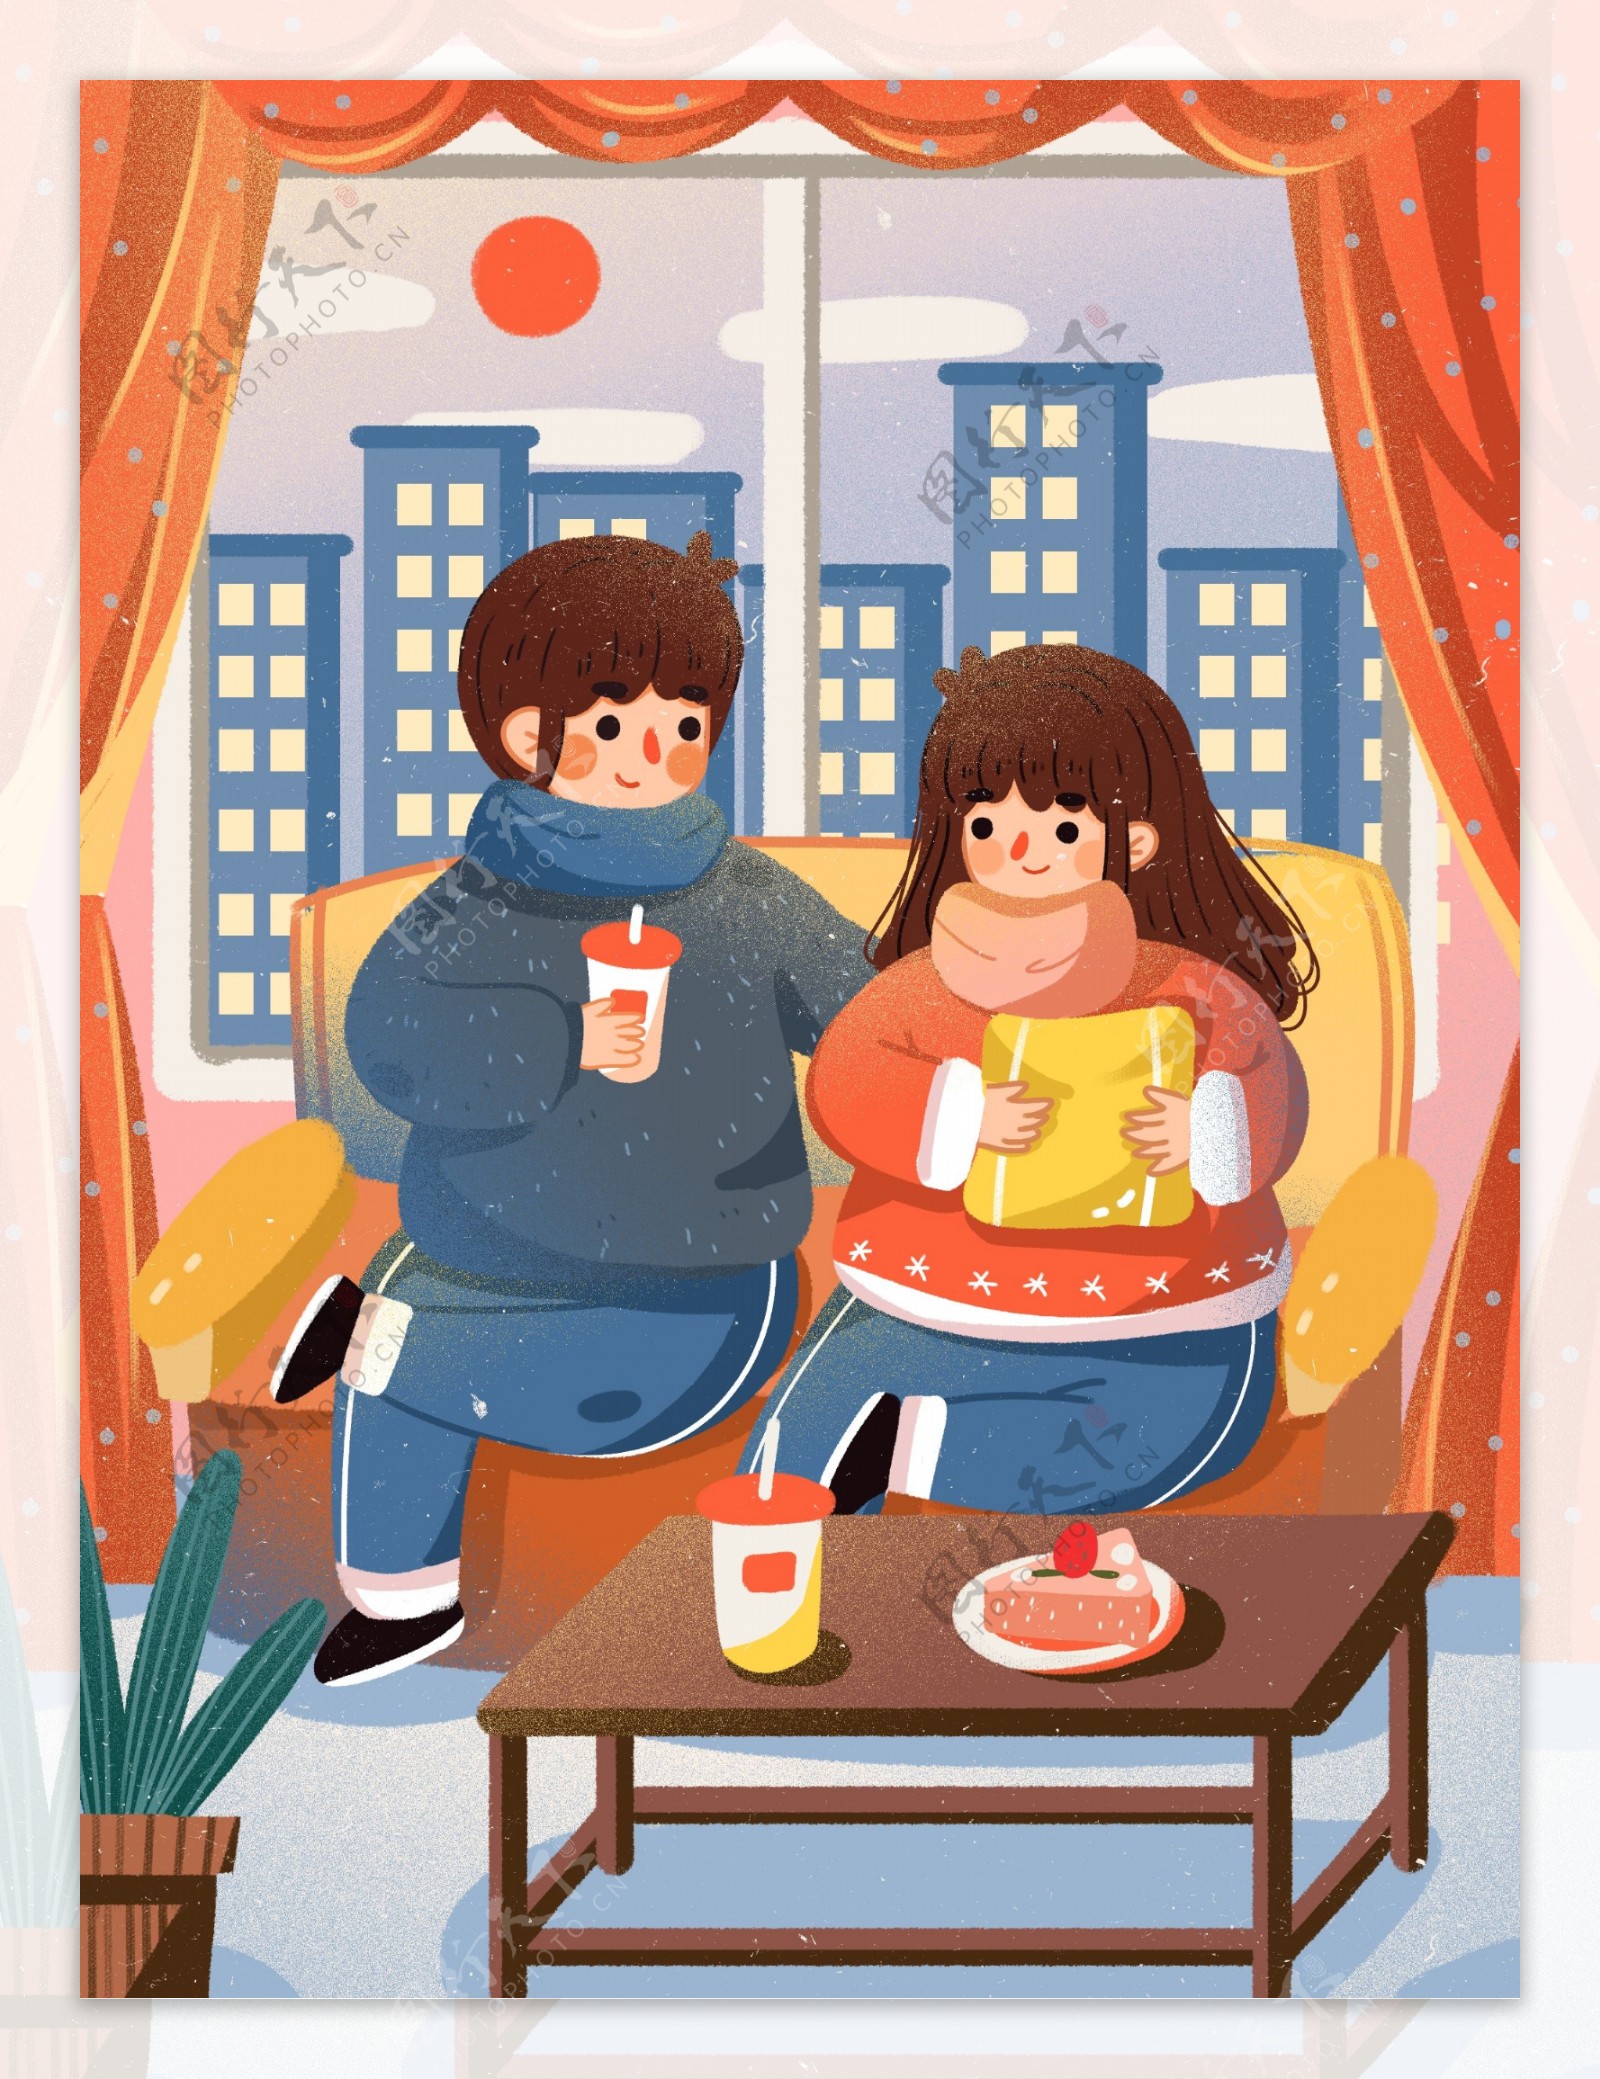 冬日情侣日常在家里吃下午茶喝茶饮日常恩爱